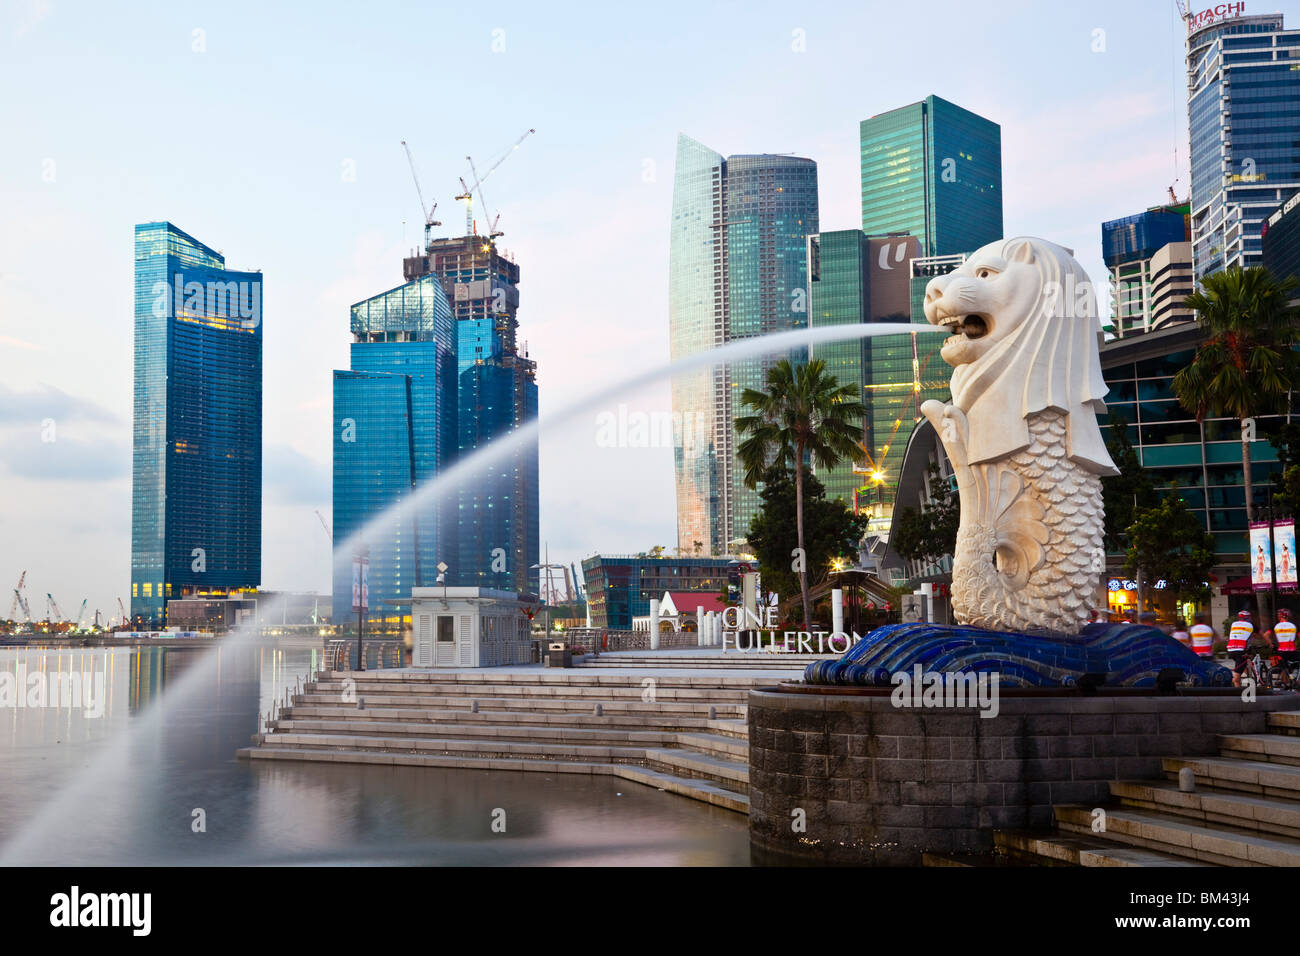 La statue du Merlion avec la ville en arrière-plan, l'Esplanade, à Singapour Banque D'Images